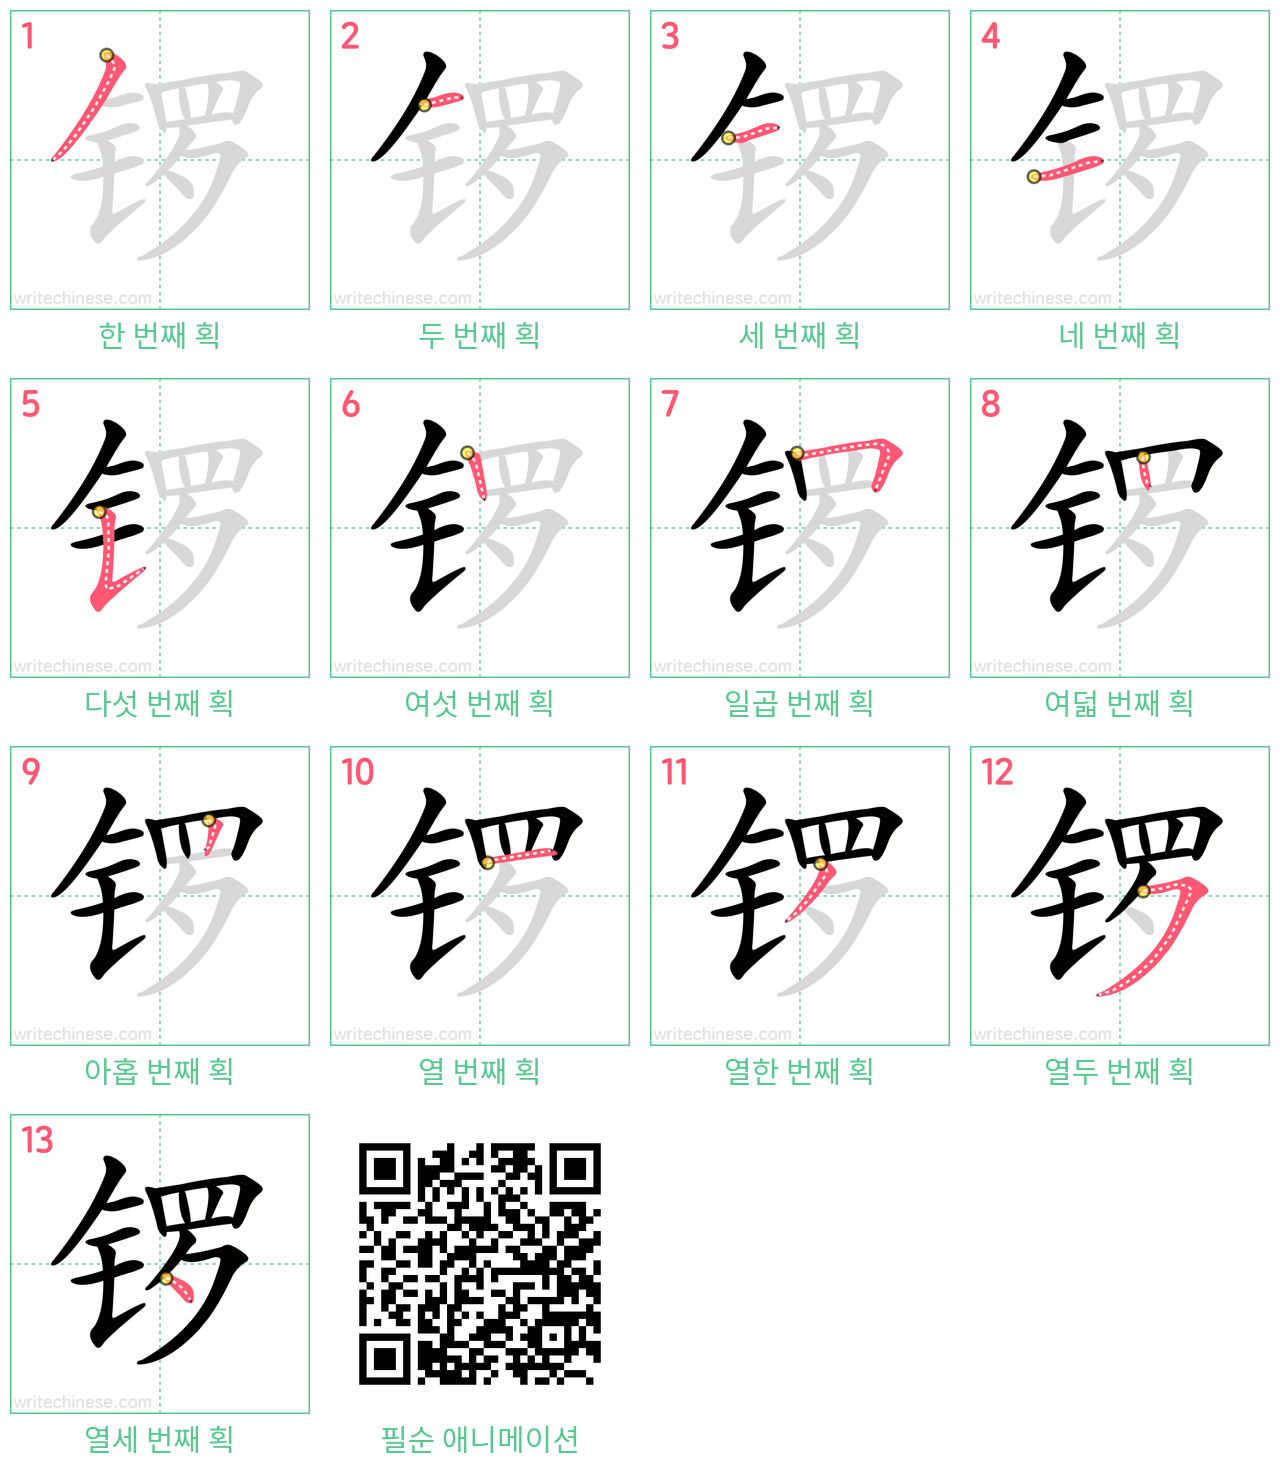 锣 step-by-step stroke order diagrams